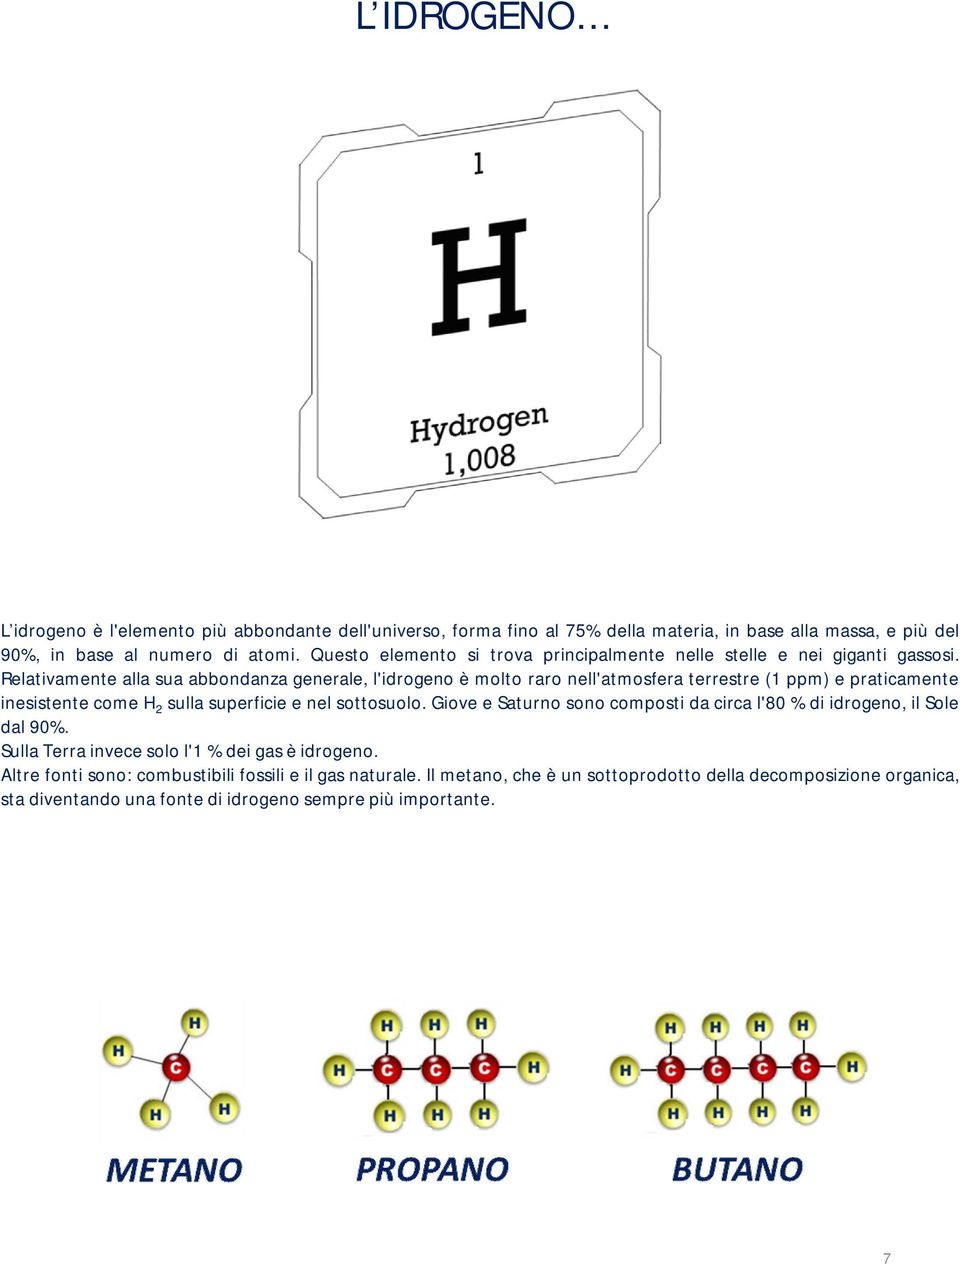 Relativamente alla sua abbondanza generale, l'idrogeno è molto raro nell'atmosfera terrestre (1 ppm) e praticamente inesistente come H 2 sulla superficie e nel sottosuolo.